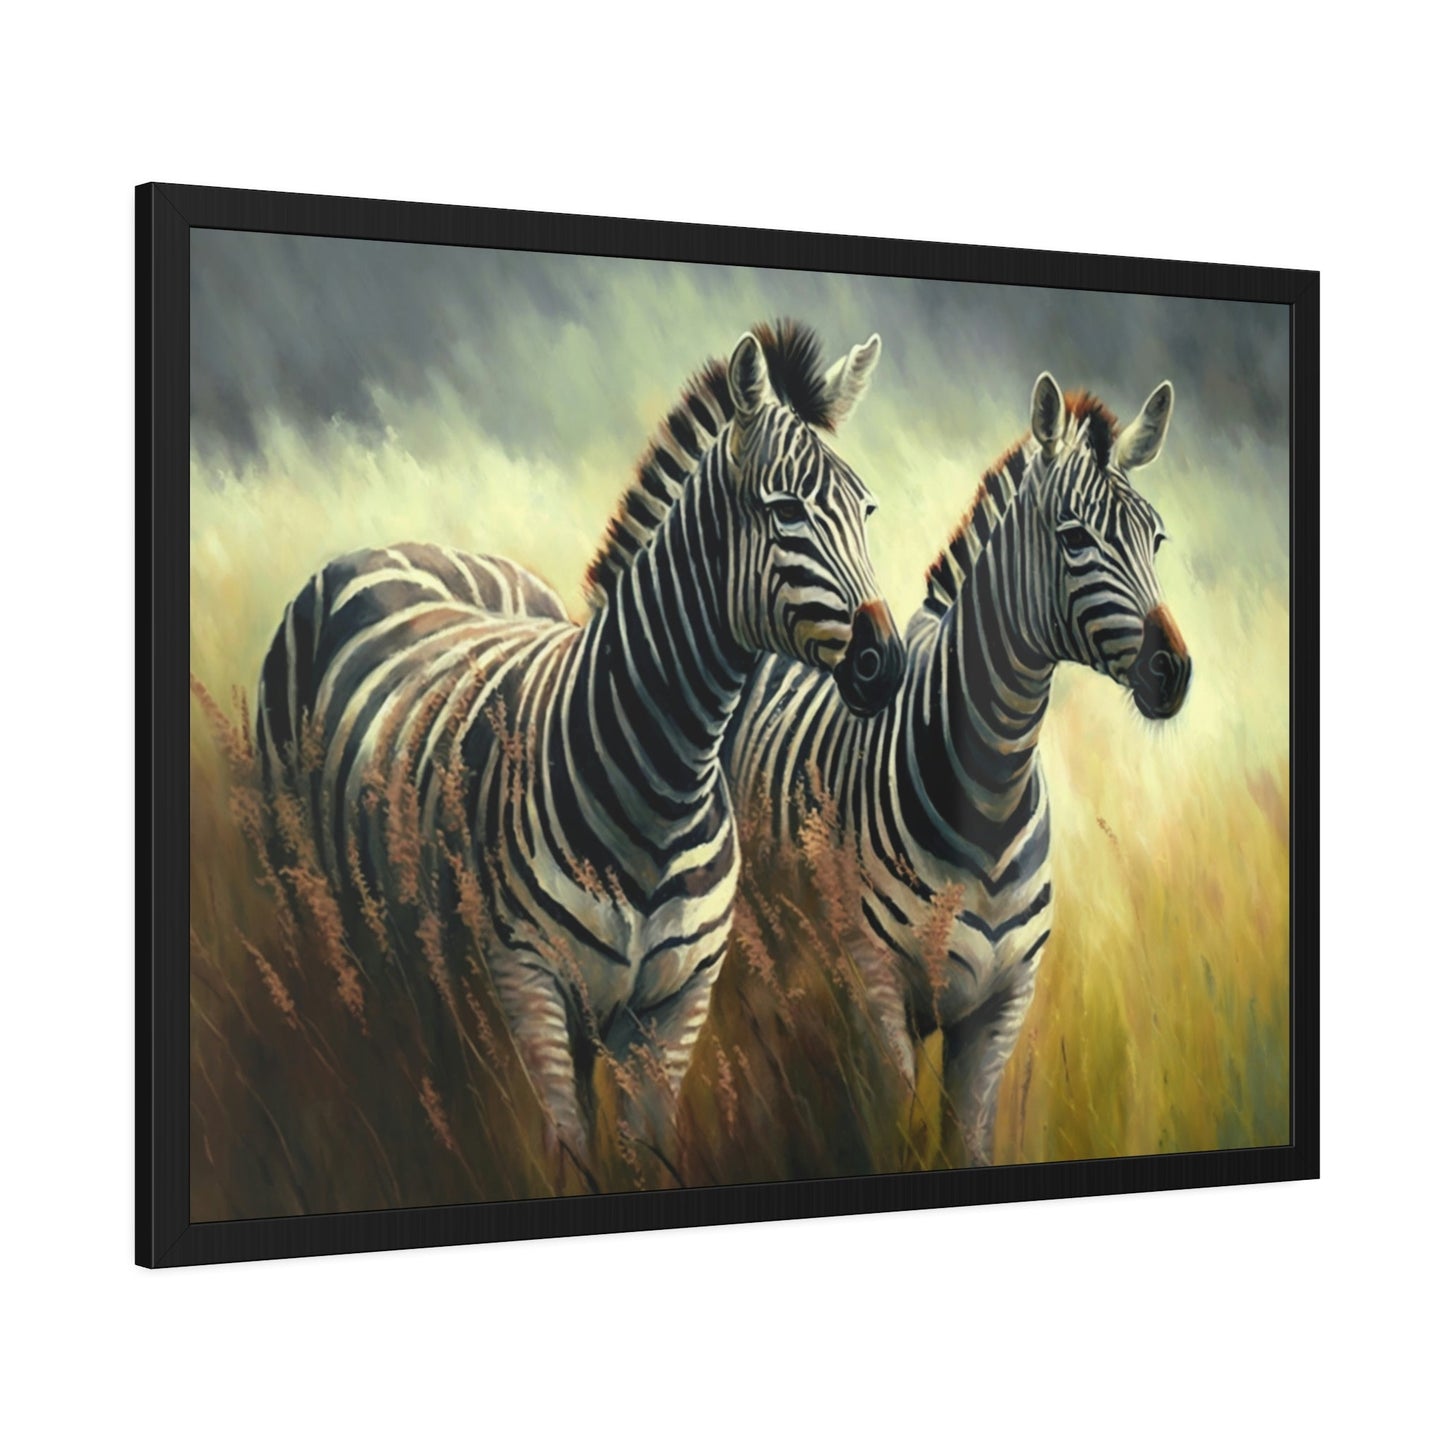 Wilderness Wonders: The Majestic Zebras